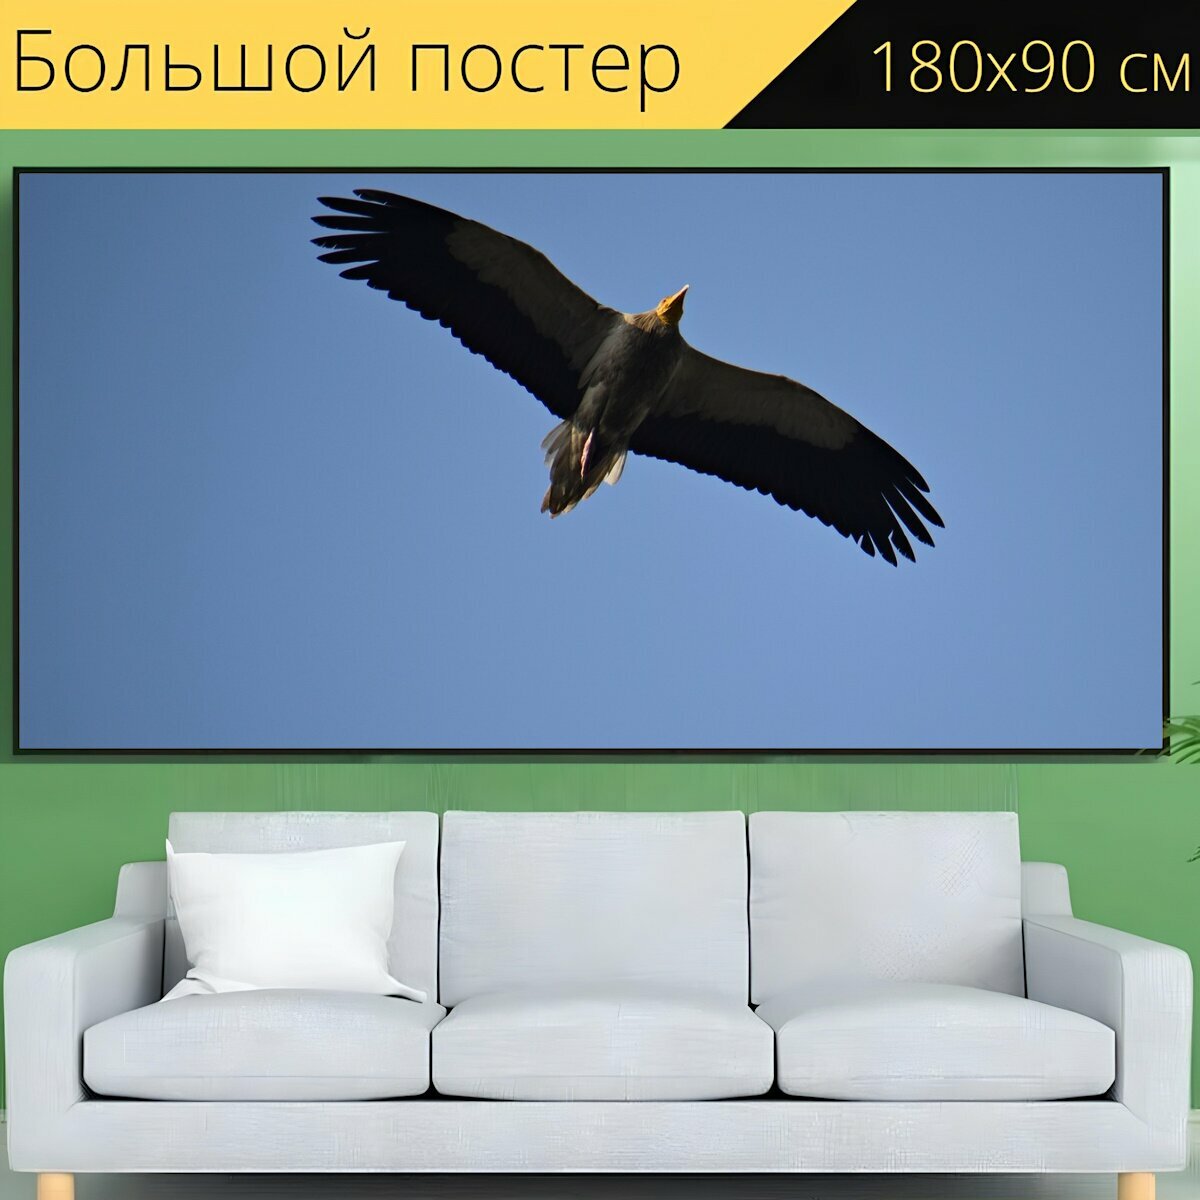 Большой постер "Птица, стервятник, природа" 180 x 90 см. для интерьера